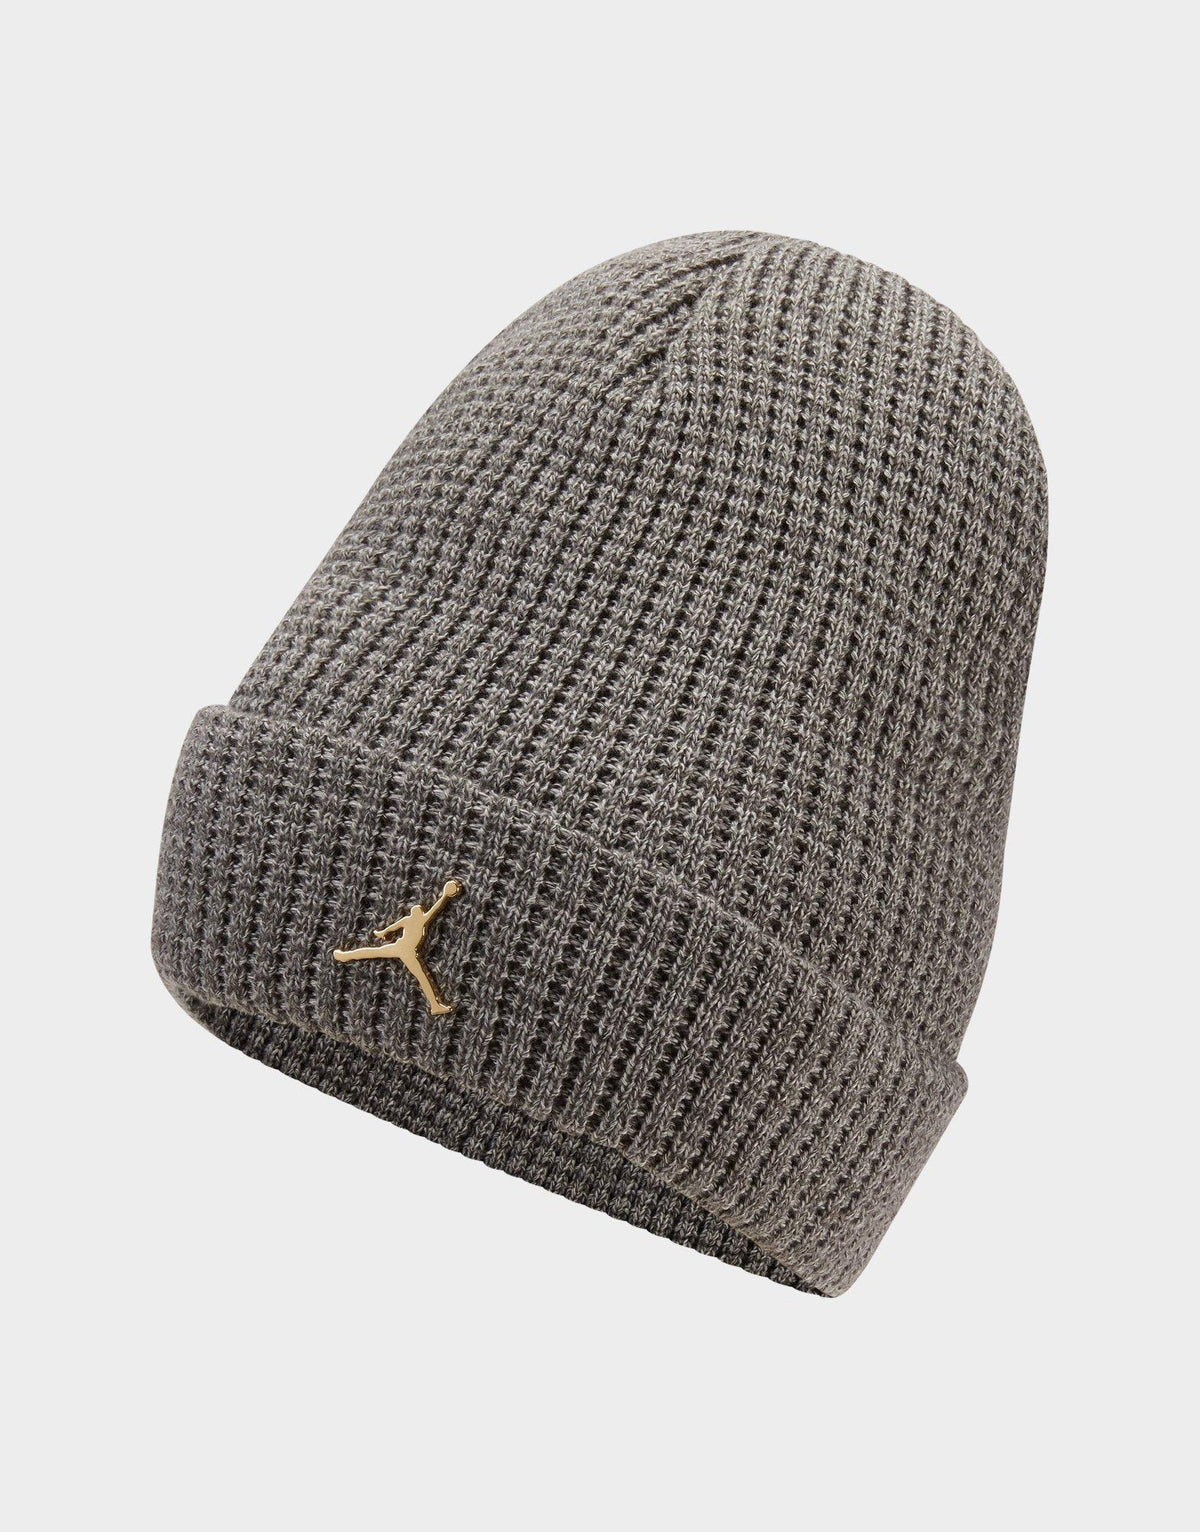 כובע גרב לוגו ג'אמפמן